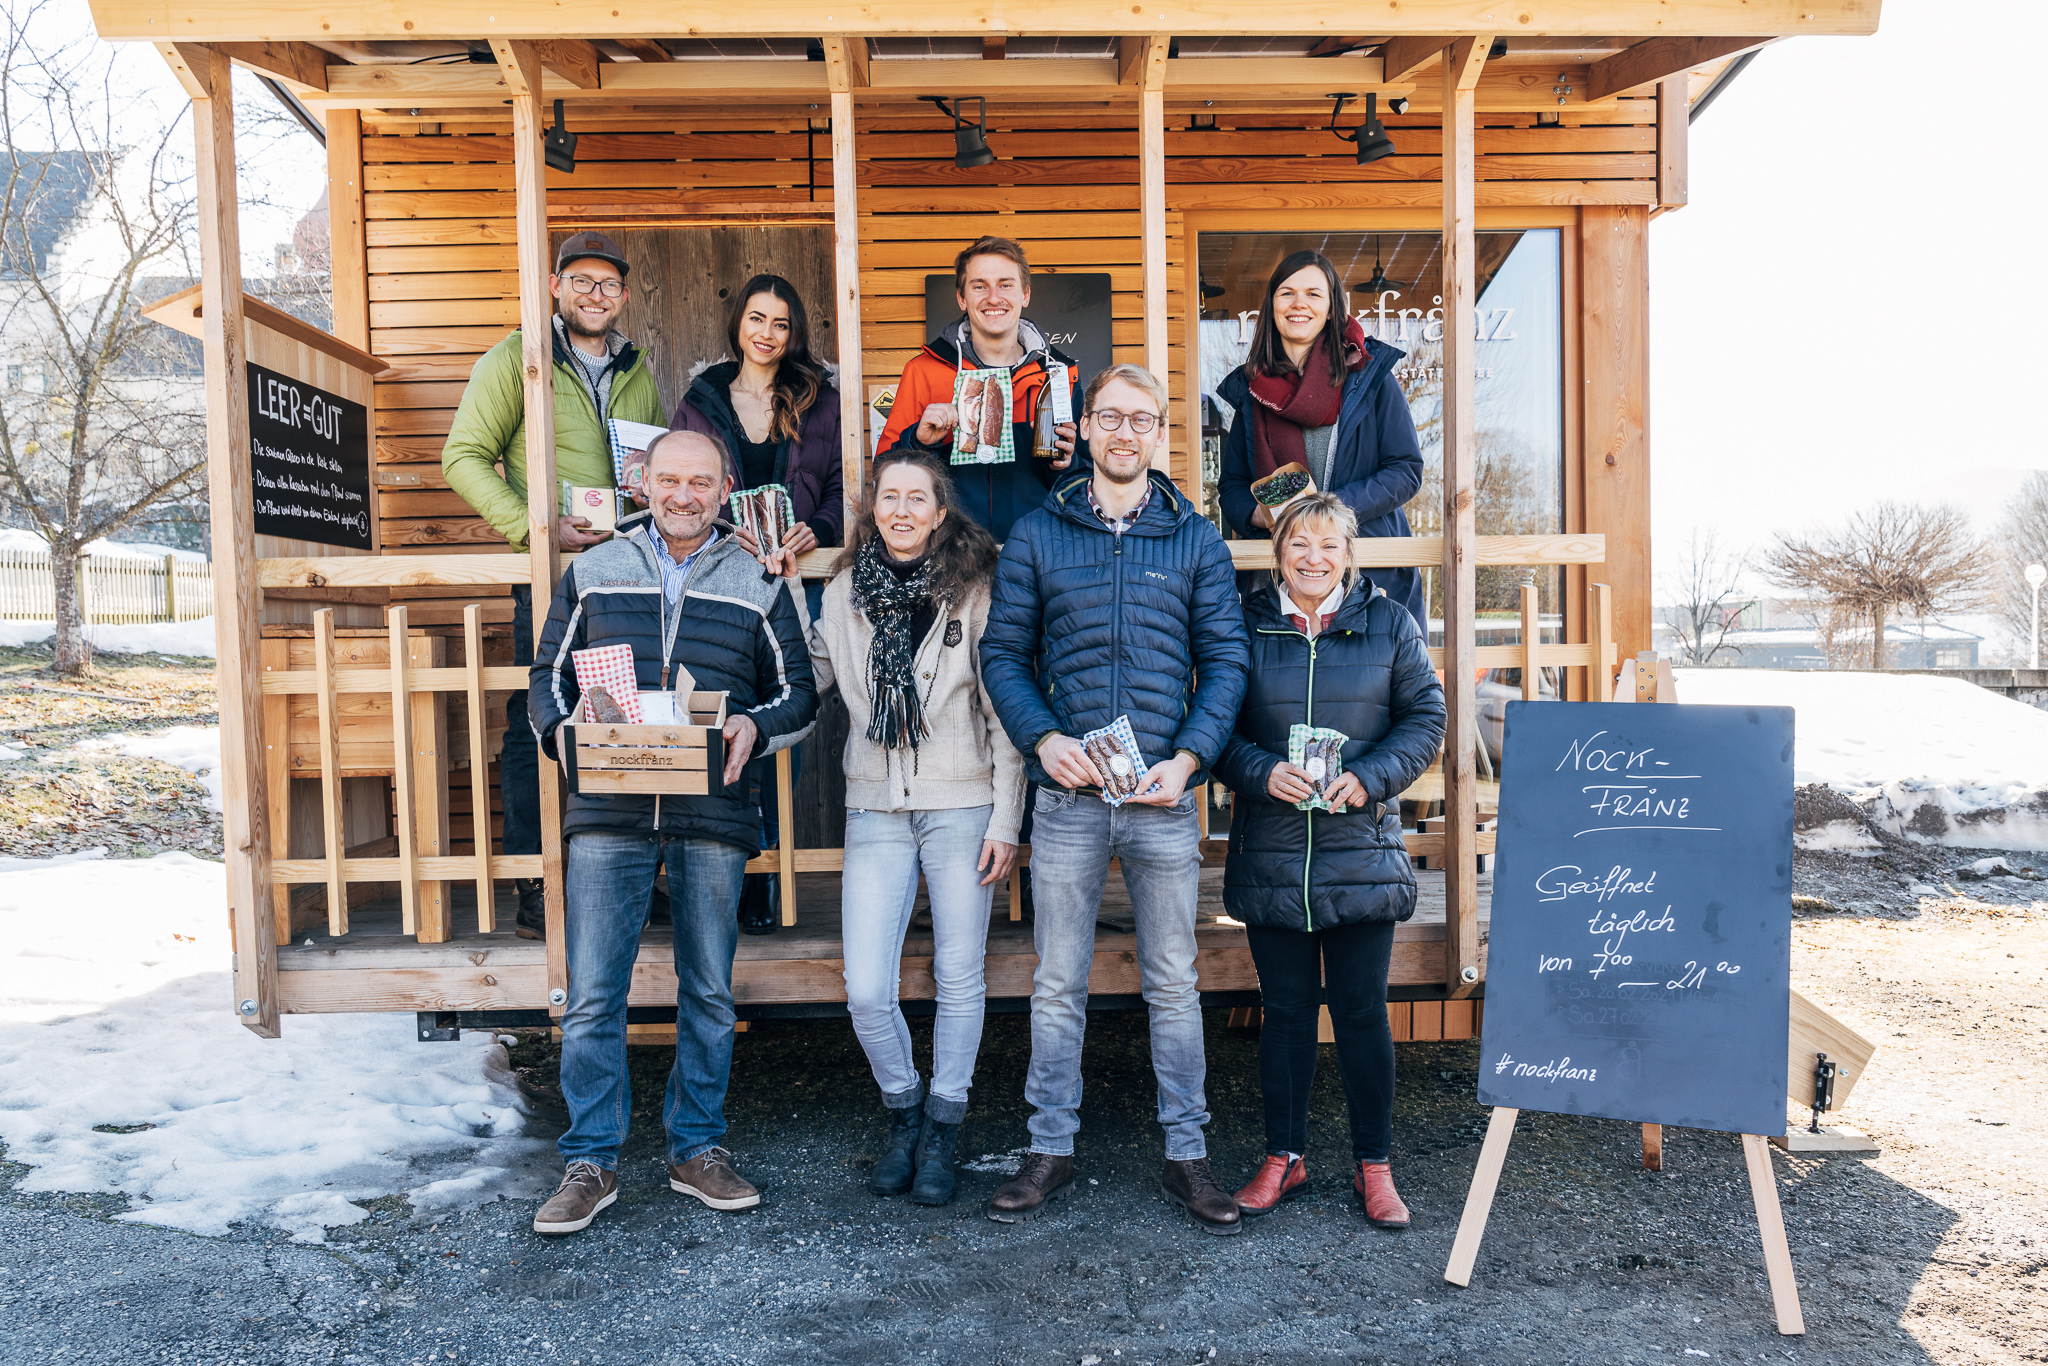 Familie Glabischnig von der Alexanderhütte vor ihrem mobilen Hofladen nockfranz im Slow Food Village Millstatt.